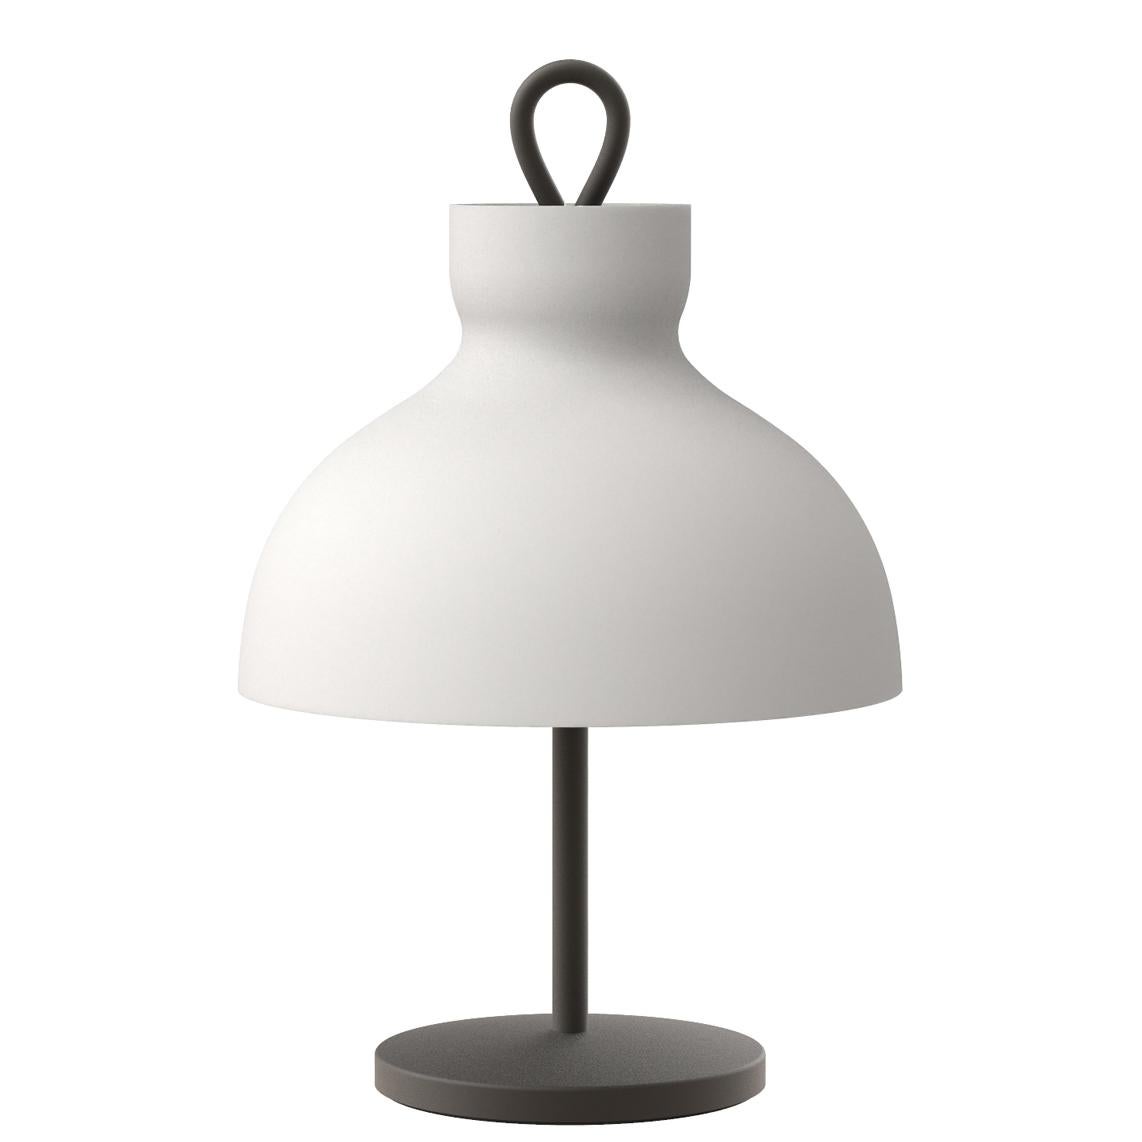 Ignazio Gardella 'Arenzano Bassa' Table Lamp in Chrome and Glass for Tato Italia For Sale 2